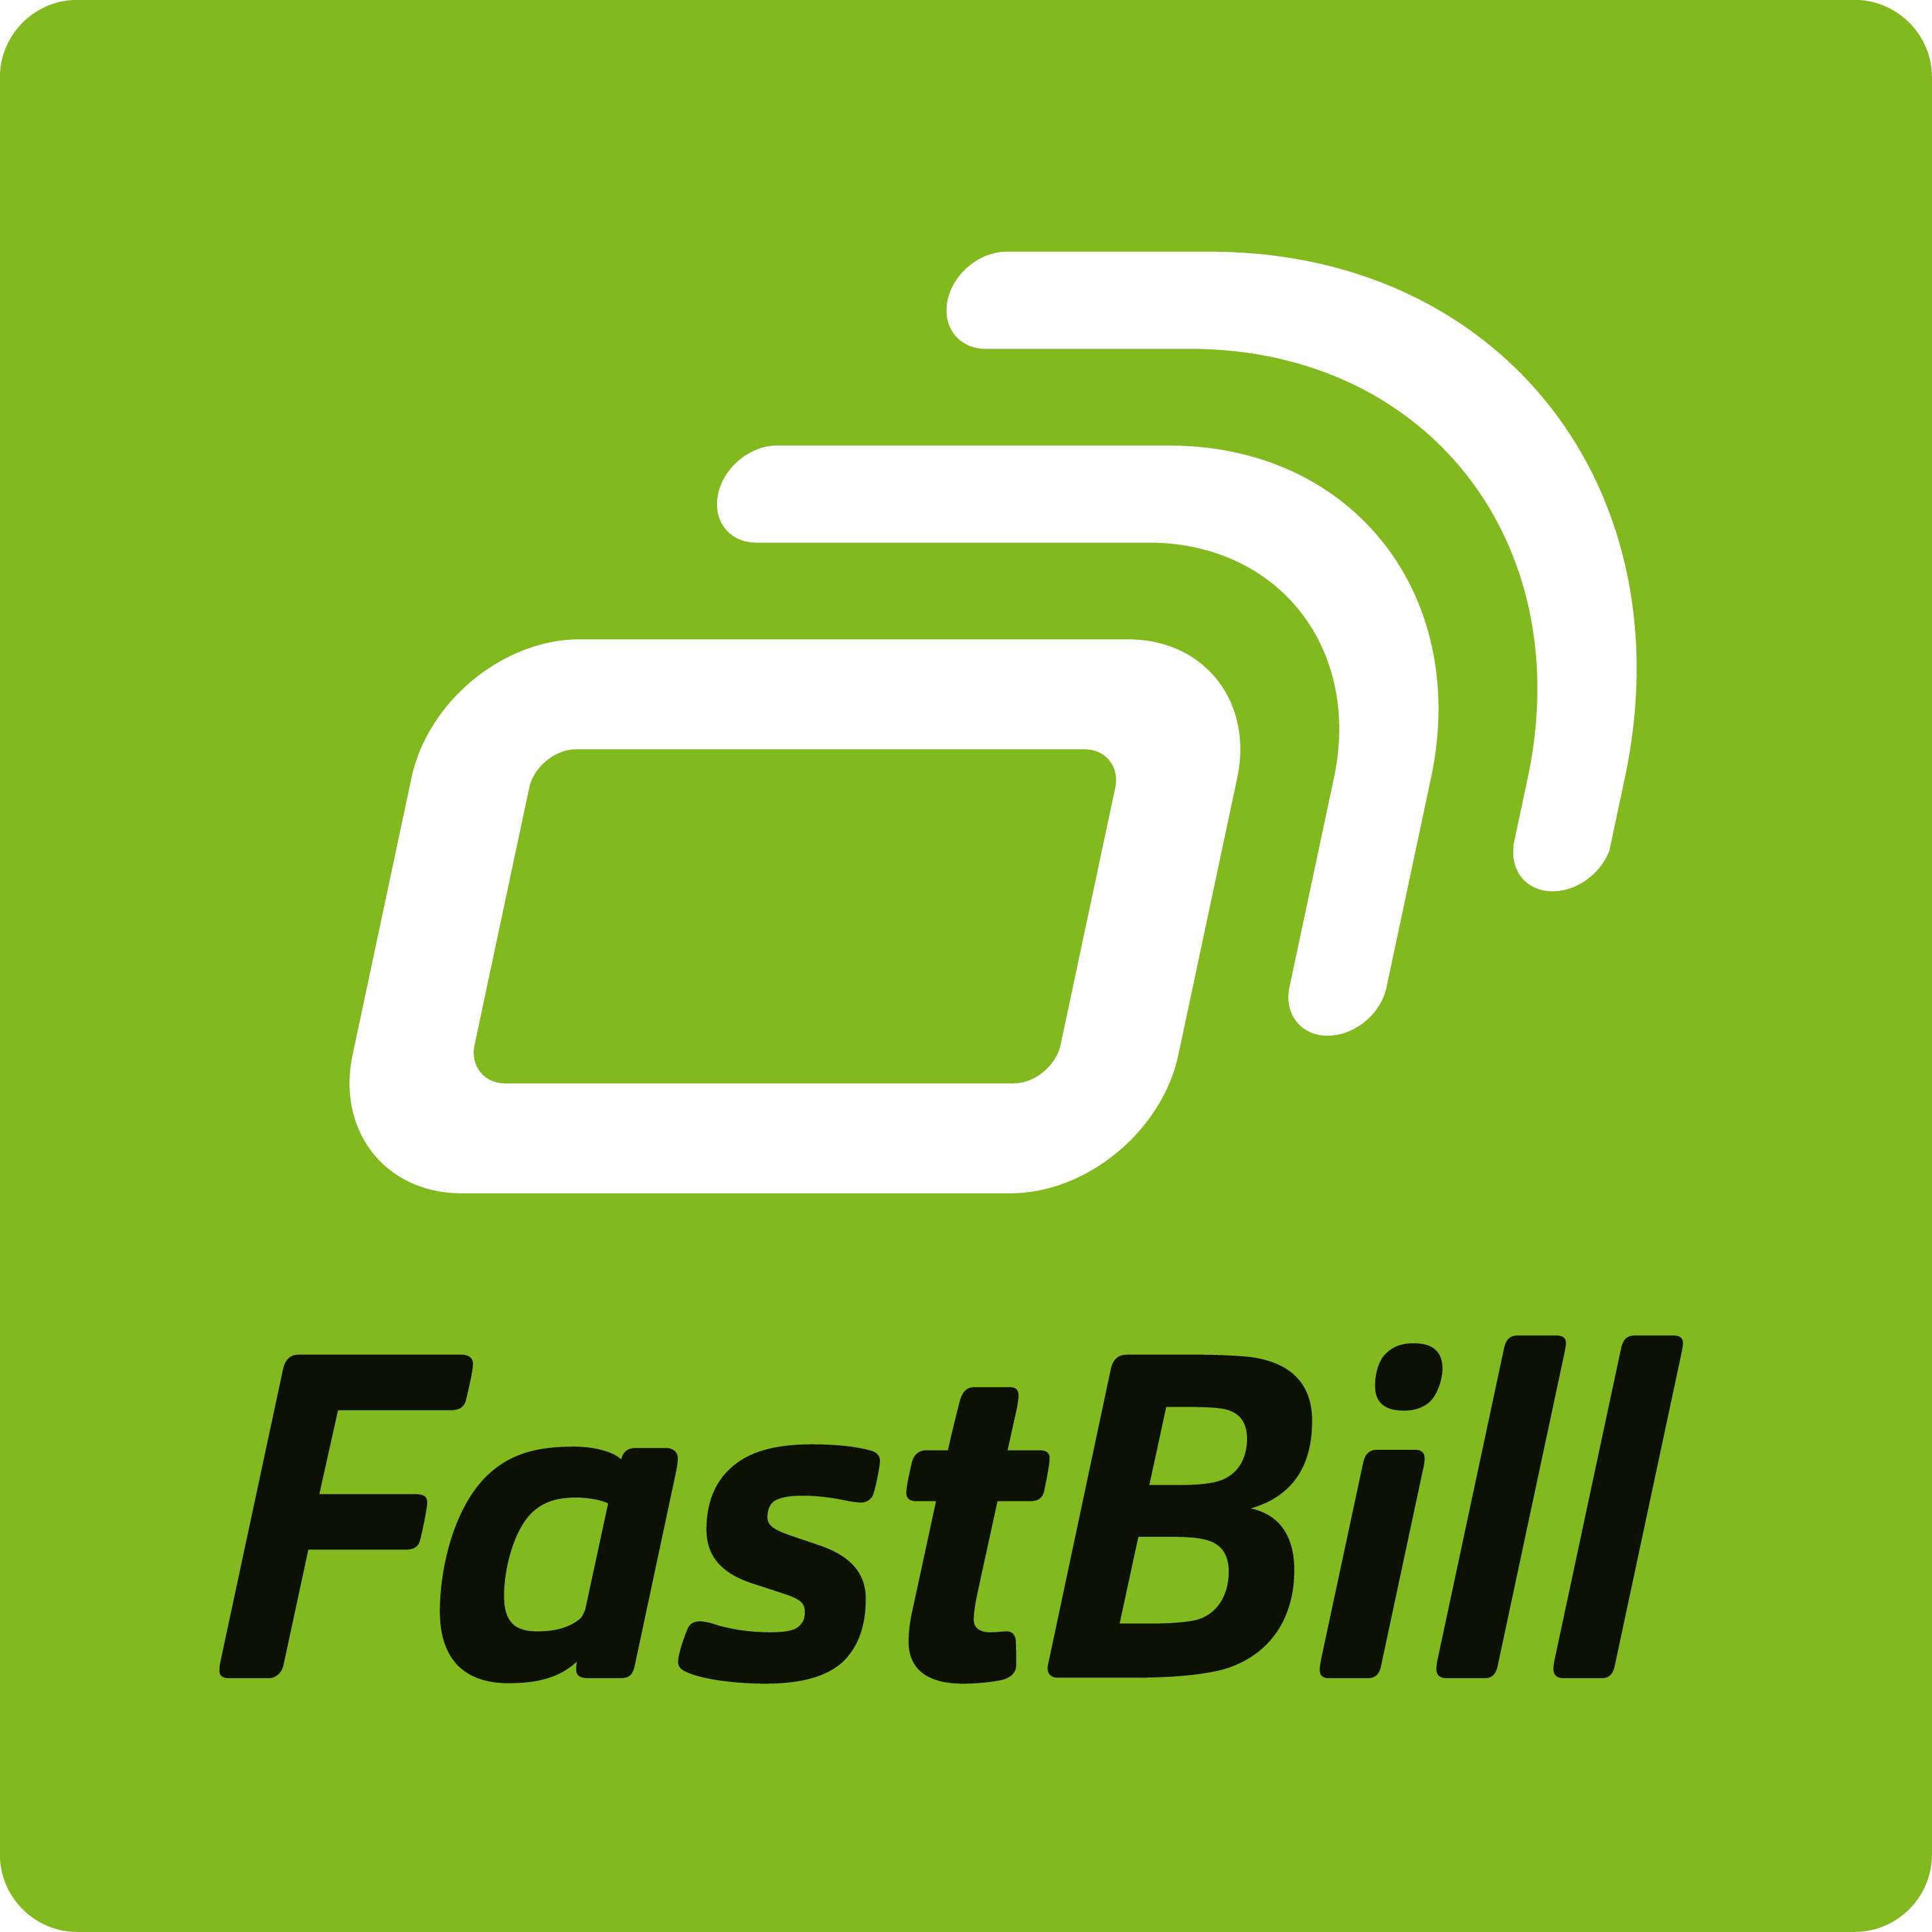 FastBill Premium